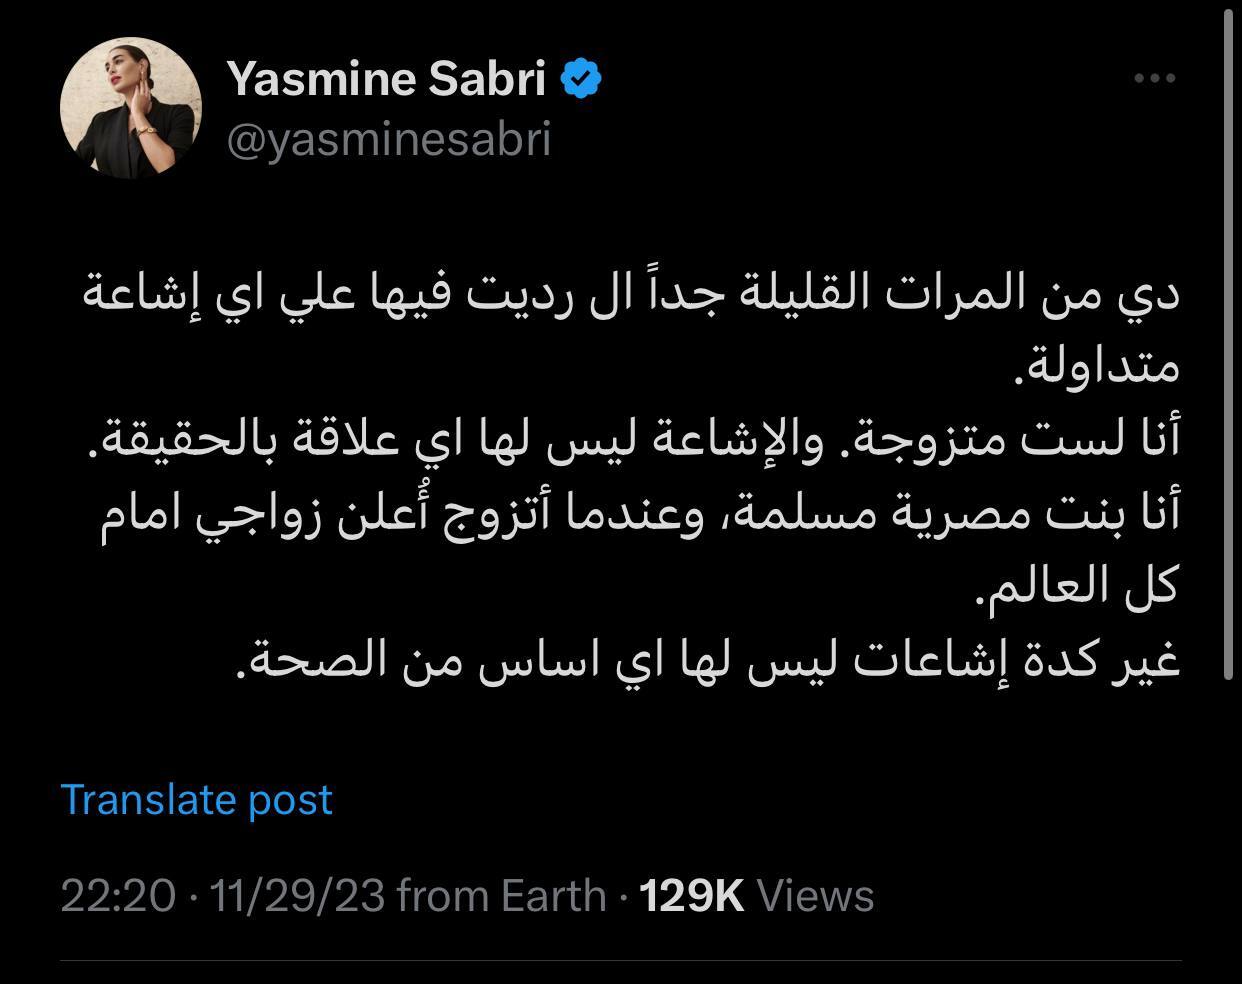 الفنانة المصرية ياسمين صبري تكشف حقيقة زواجها